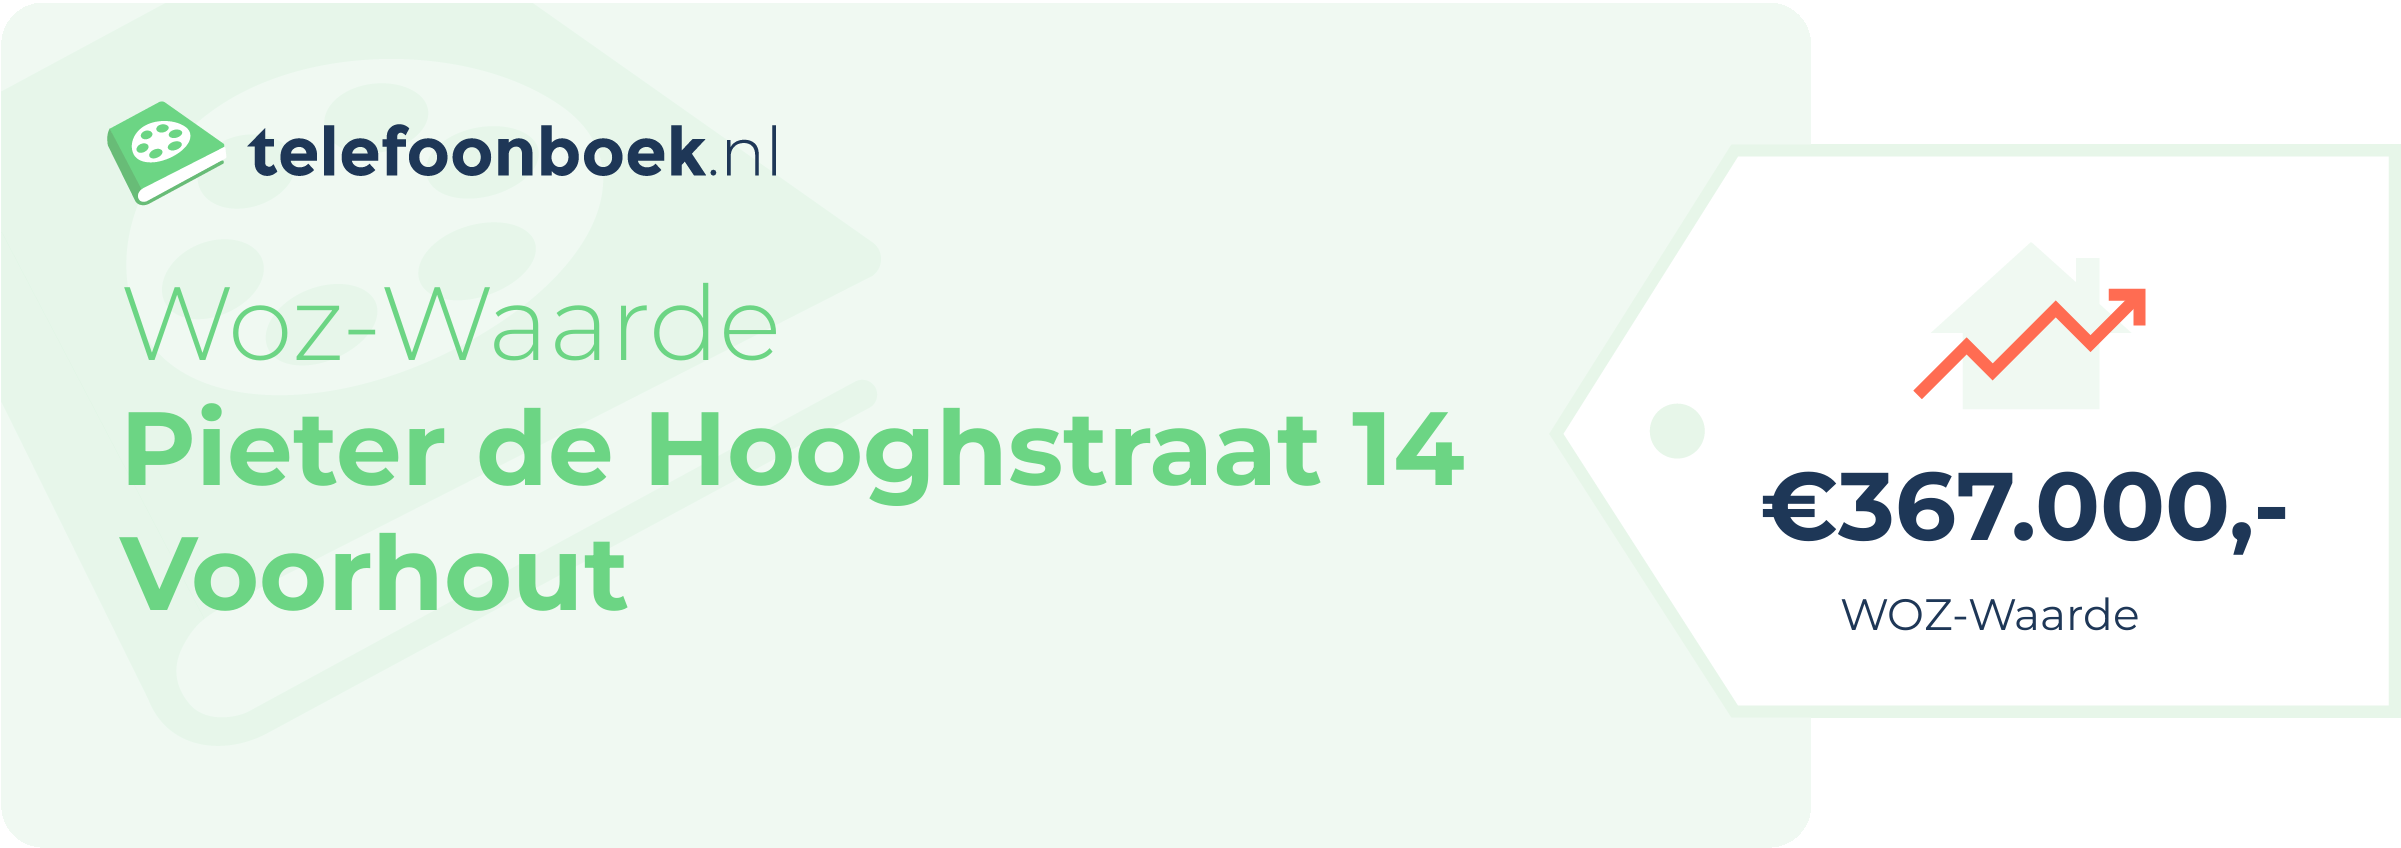 WOZ-waarde Pieter De Hooghstraat 14 Voorhout